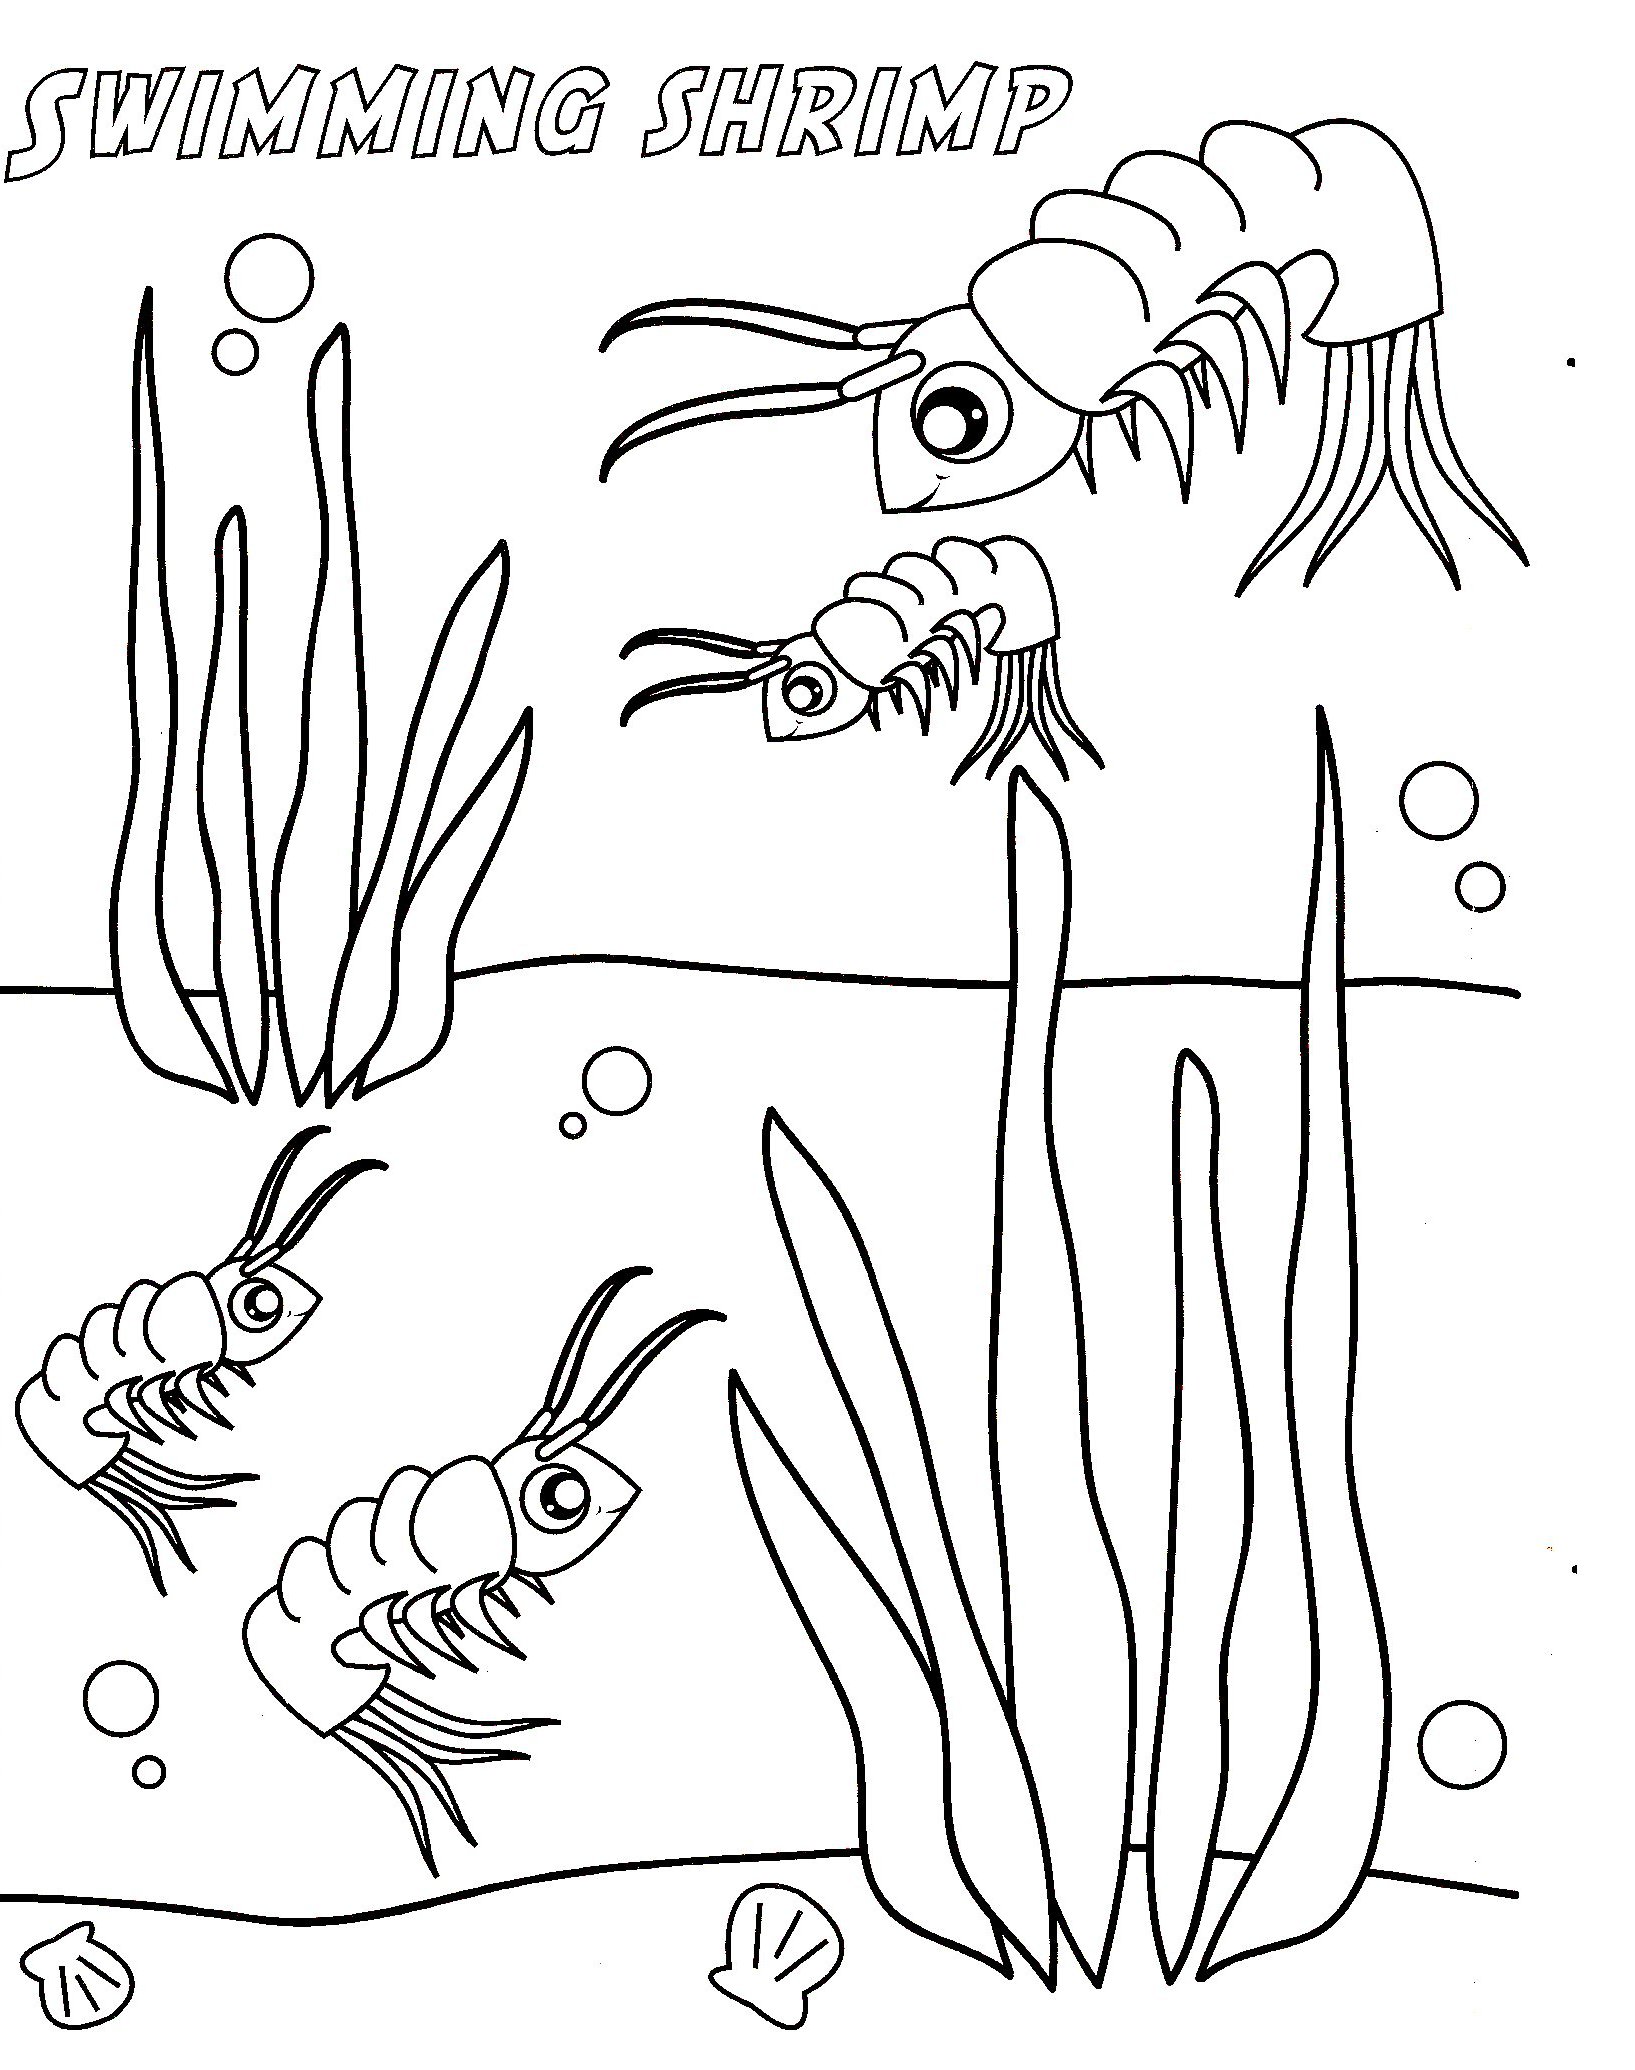 Shrimp coloring #2, Download drawings